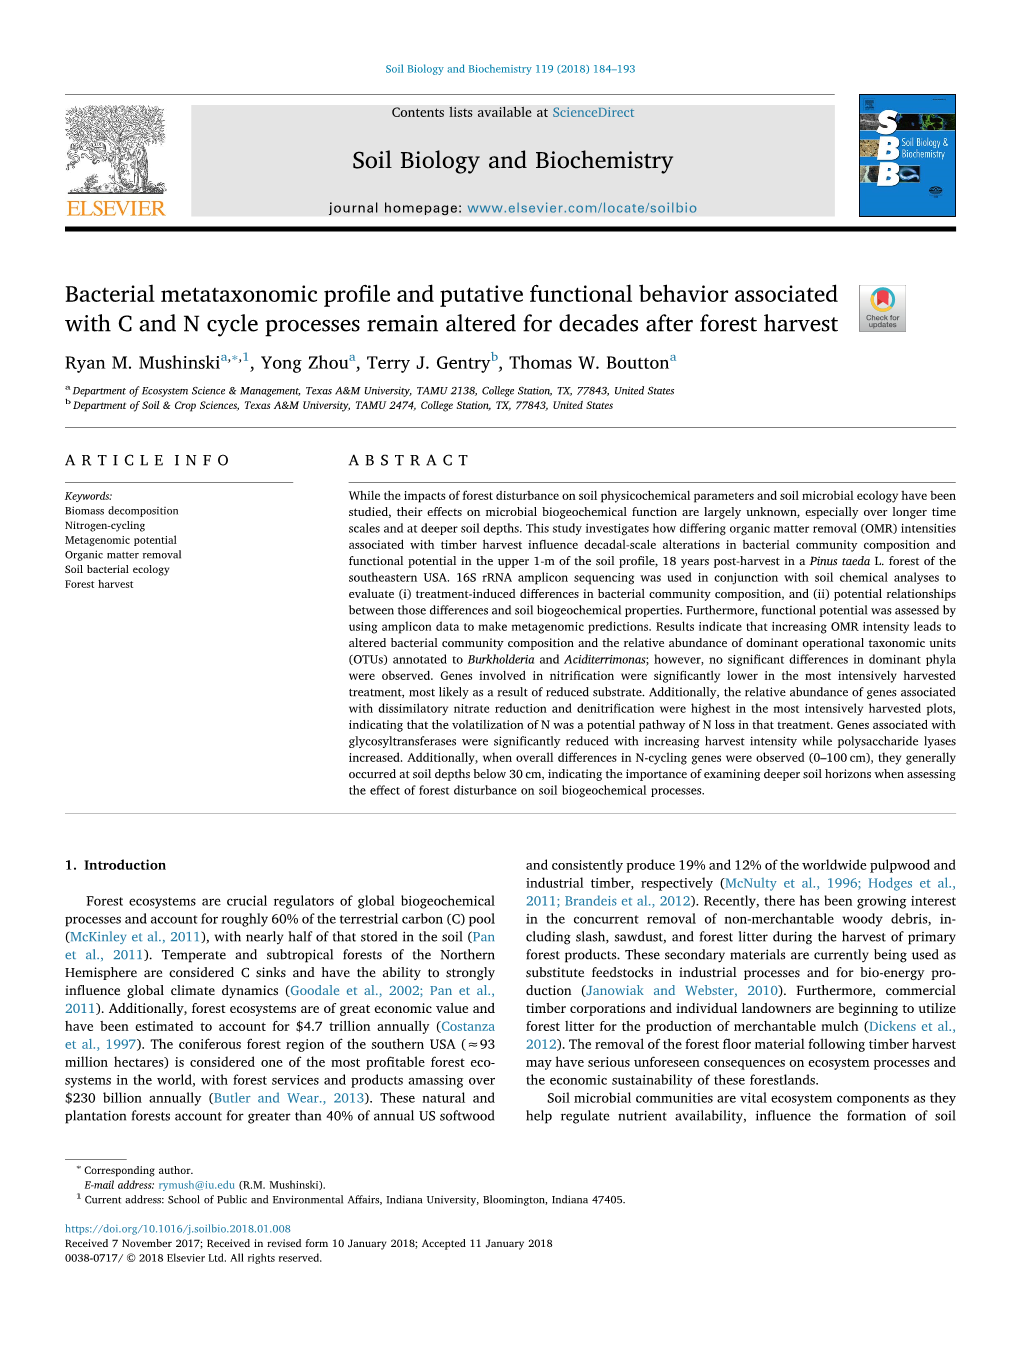 Bacterial Metataxonomic Profile and Putative Functional Behavior